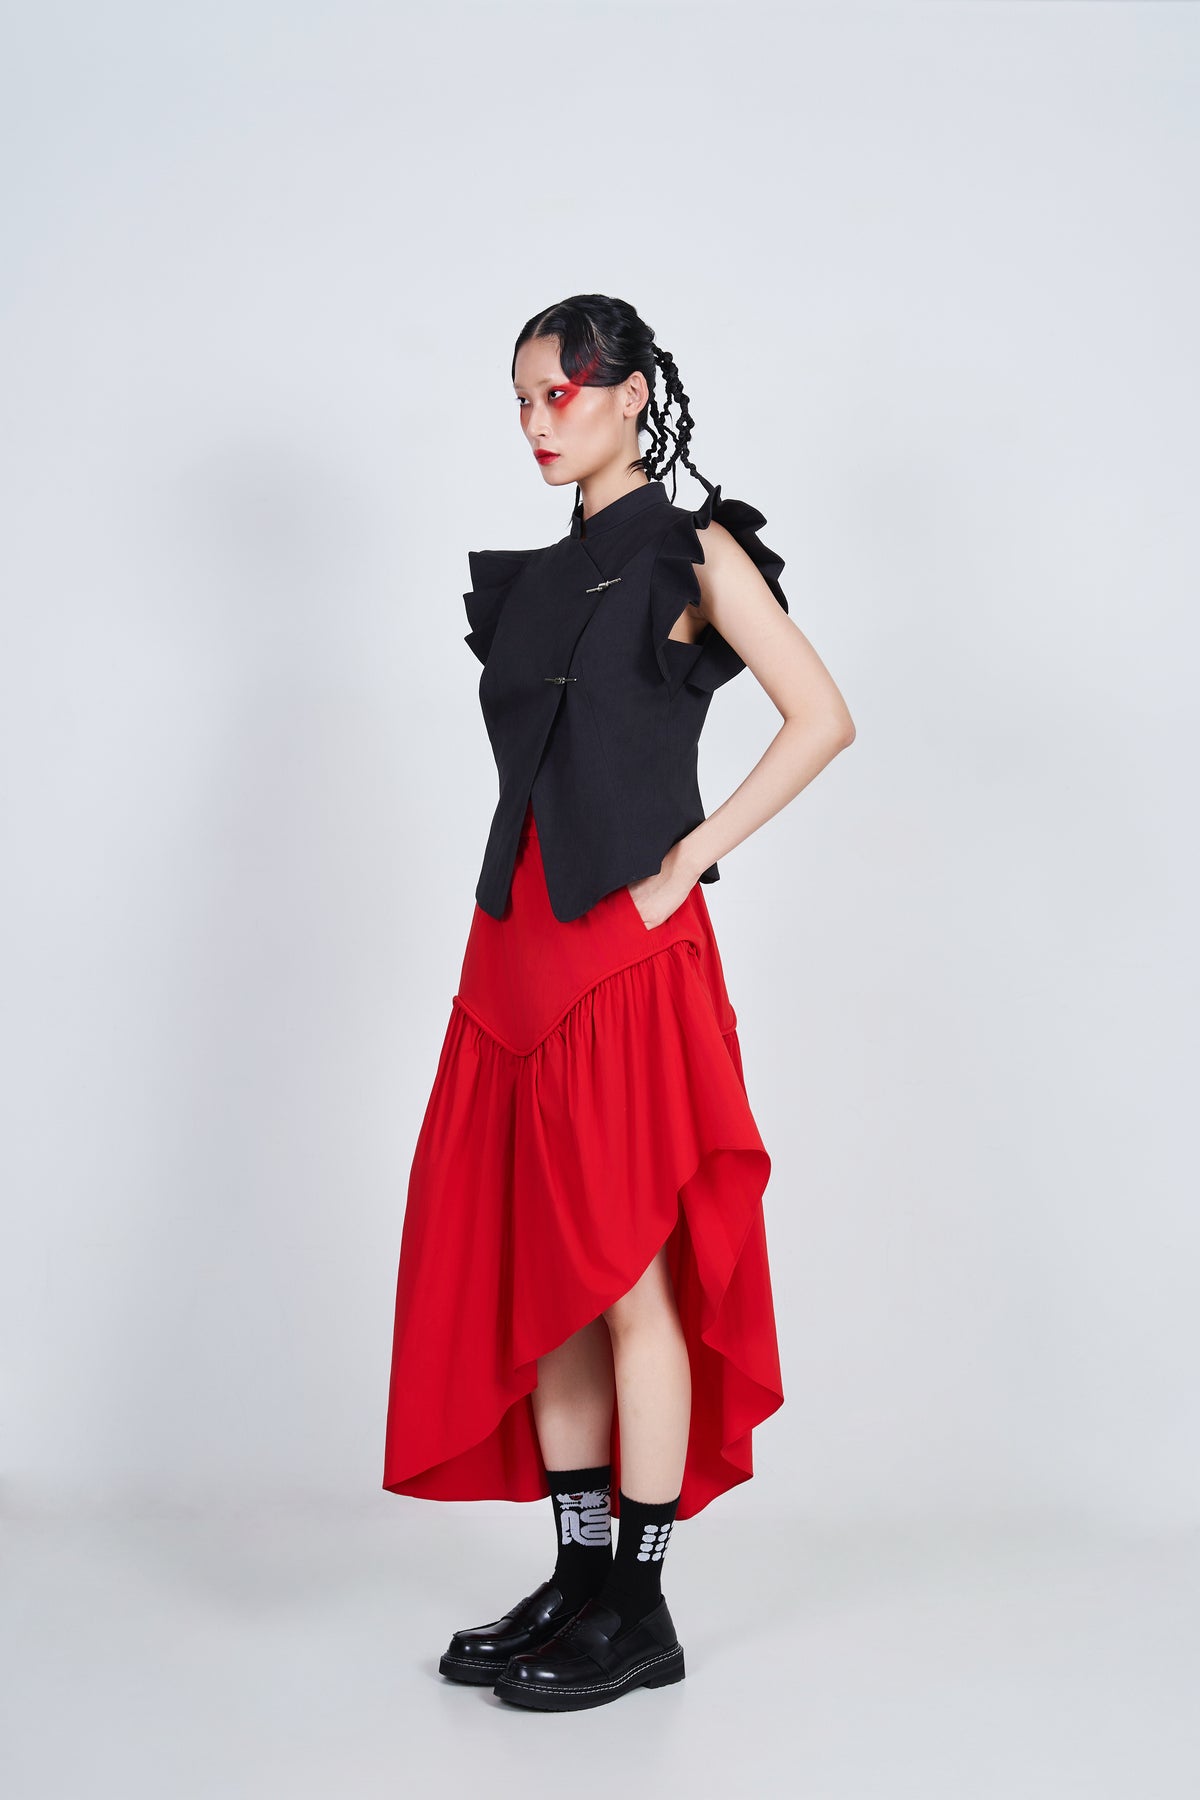 NOIZ N4SK2 High-Waisted Wavy Asymmetrical Skirt